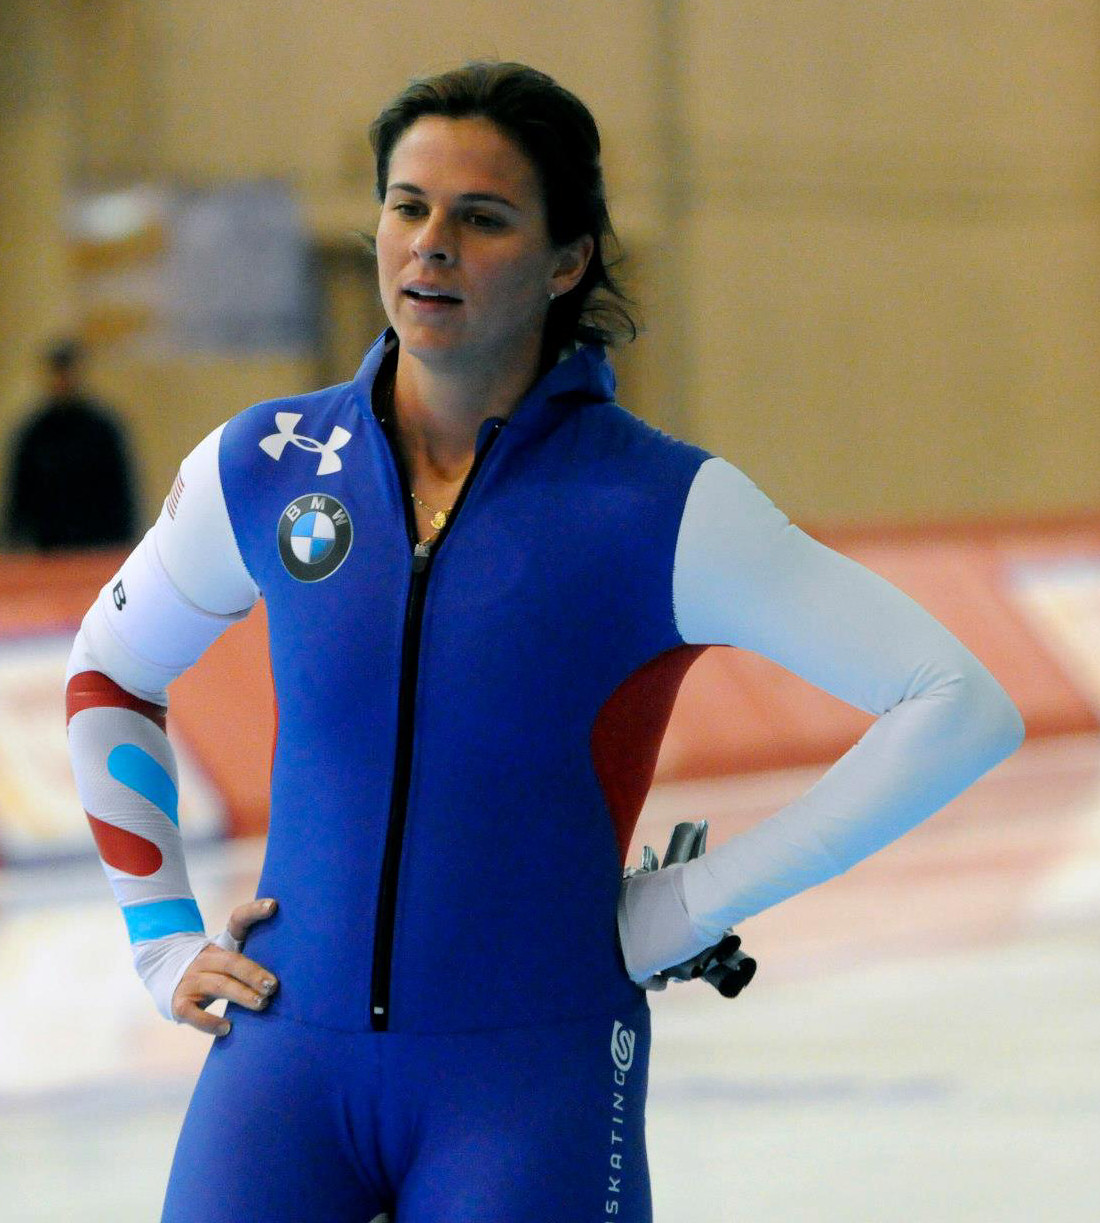 Brittany Bowe 2014 : Brittany Bowe: Sochi 2014 Speedskater -10. 